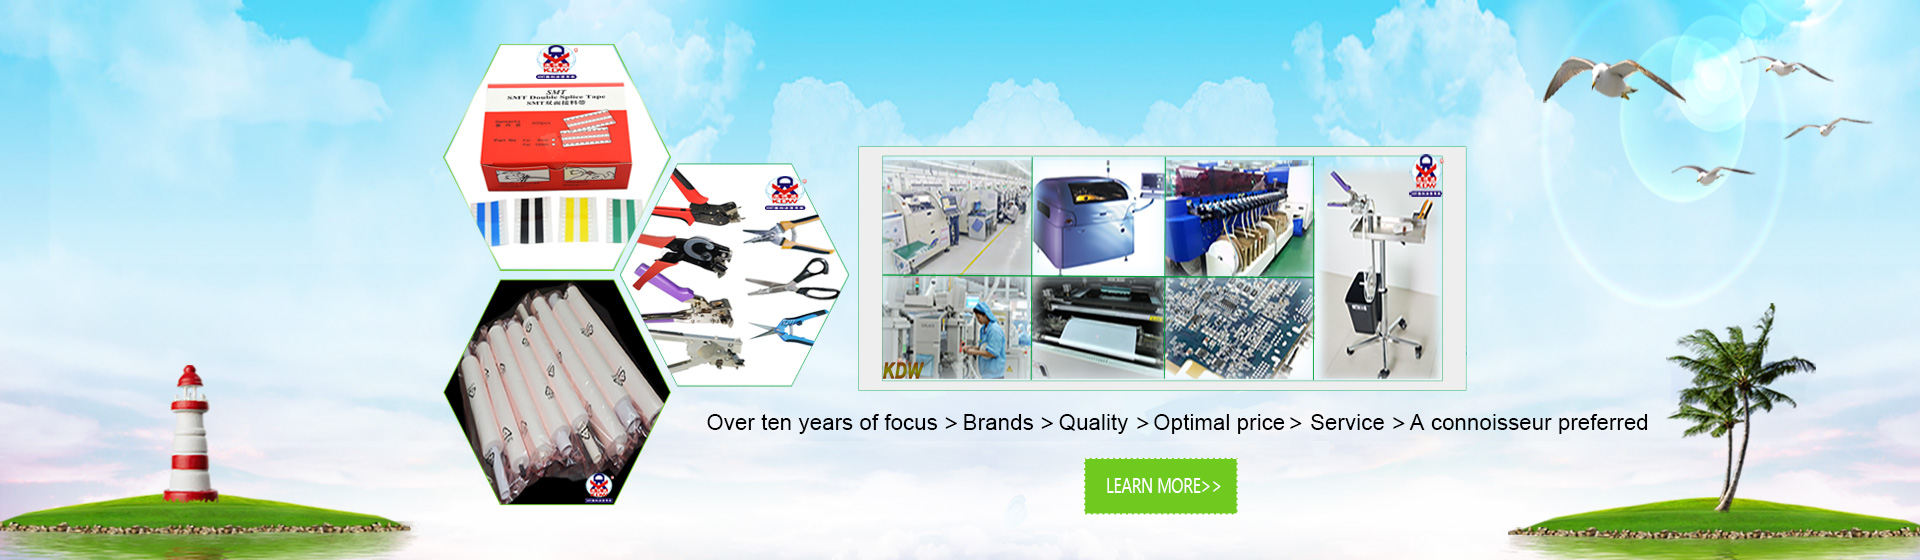 ShenZhen KDW Electronics Co.,Ltd